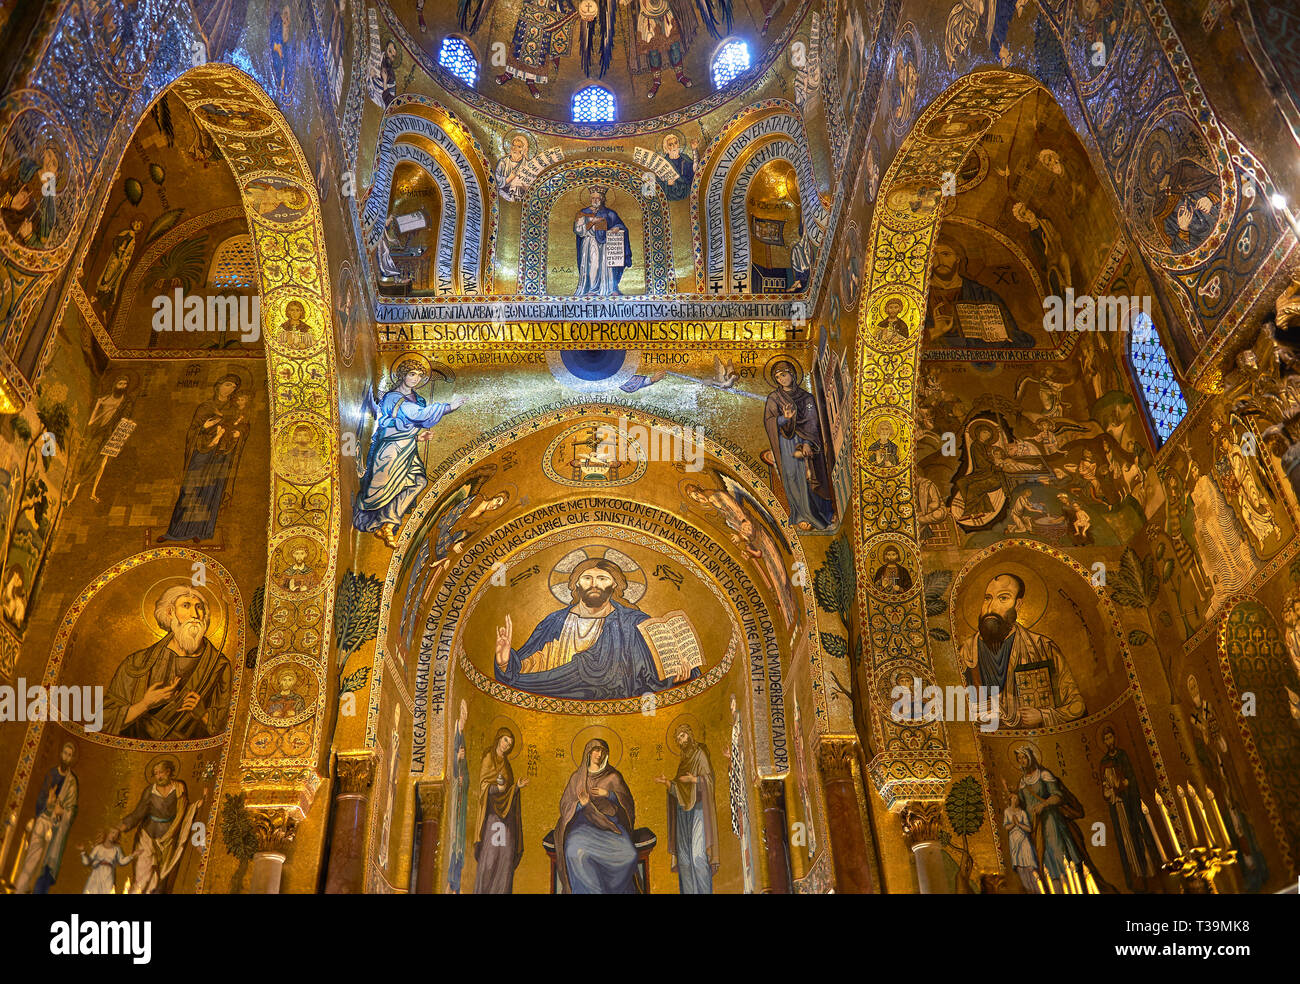 Mittelalterlichen byzantinischen Stil Mosaiken aus dem Hauptschiff der Pfalzkapelle, Cappella Palatina, Palermo, Italien Stockfoto